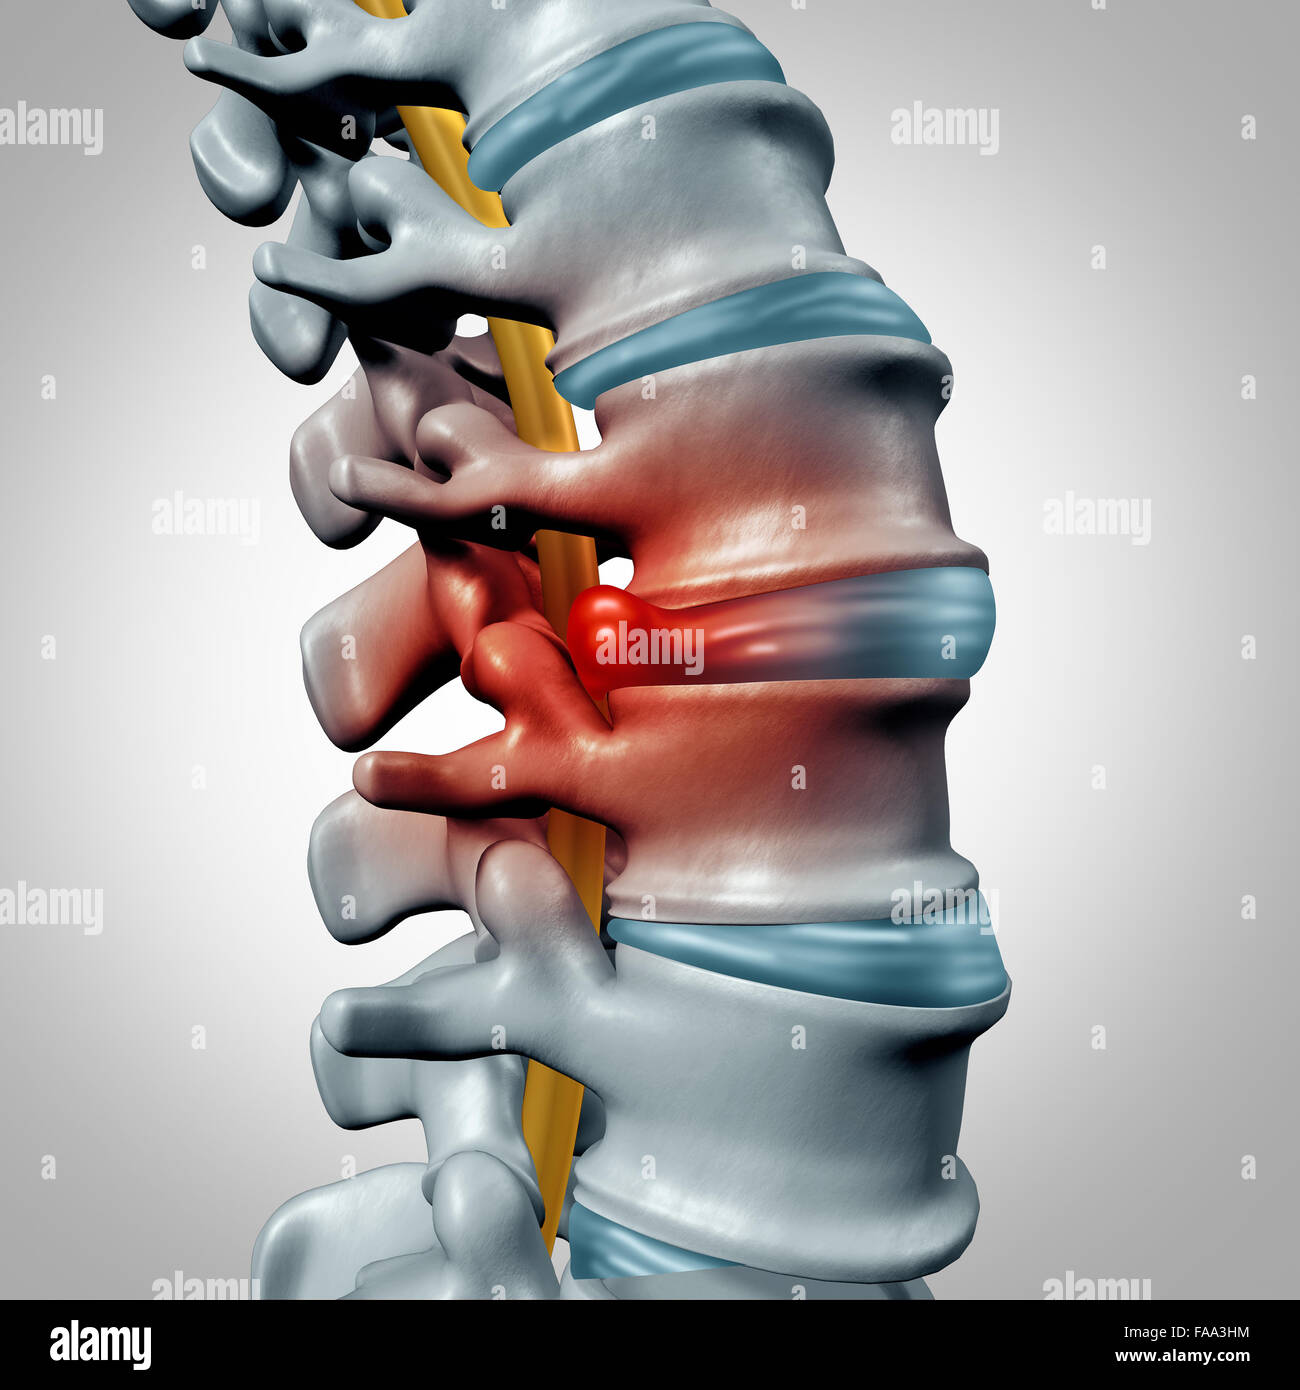 Ernia del disco del concetto e il dolore della colonna vertebrale diagnostico come una colonna vertebrale umana simbolo del sistema come medico problema sanitario e simbolo di anatomia con scheletro della struttura ossea e dischi intervertebrali closeup. Foto Stock